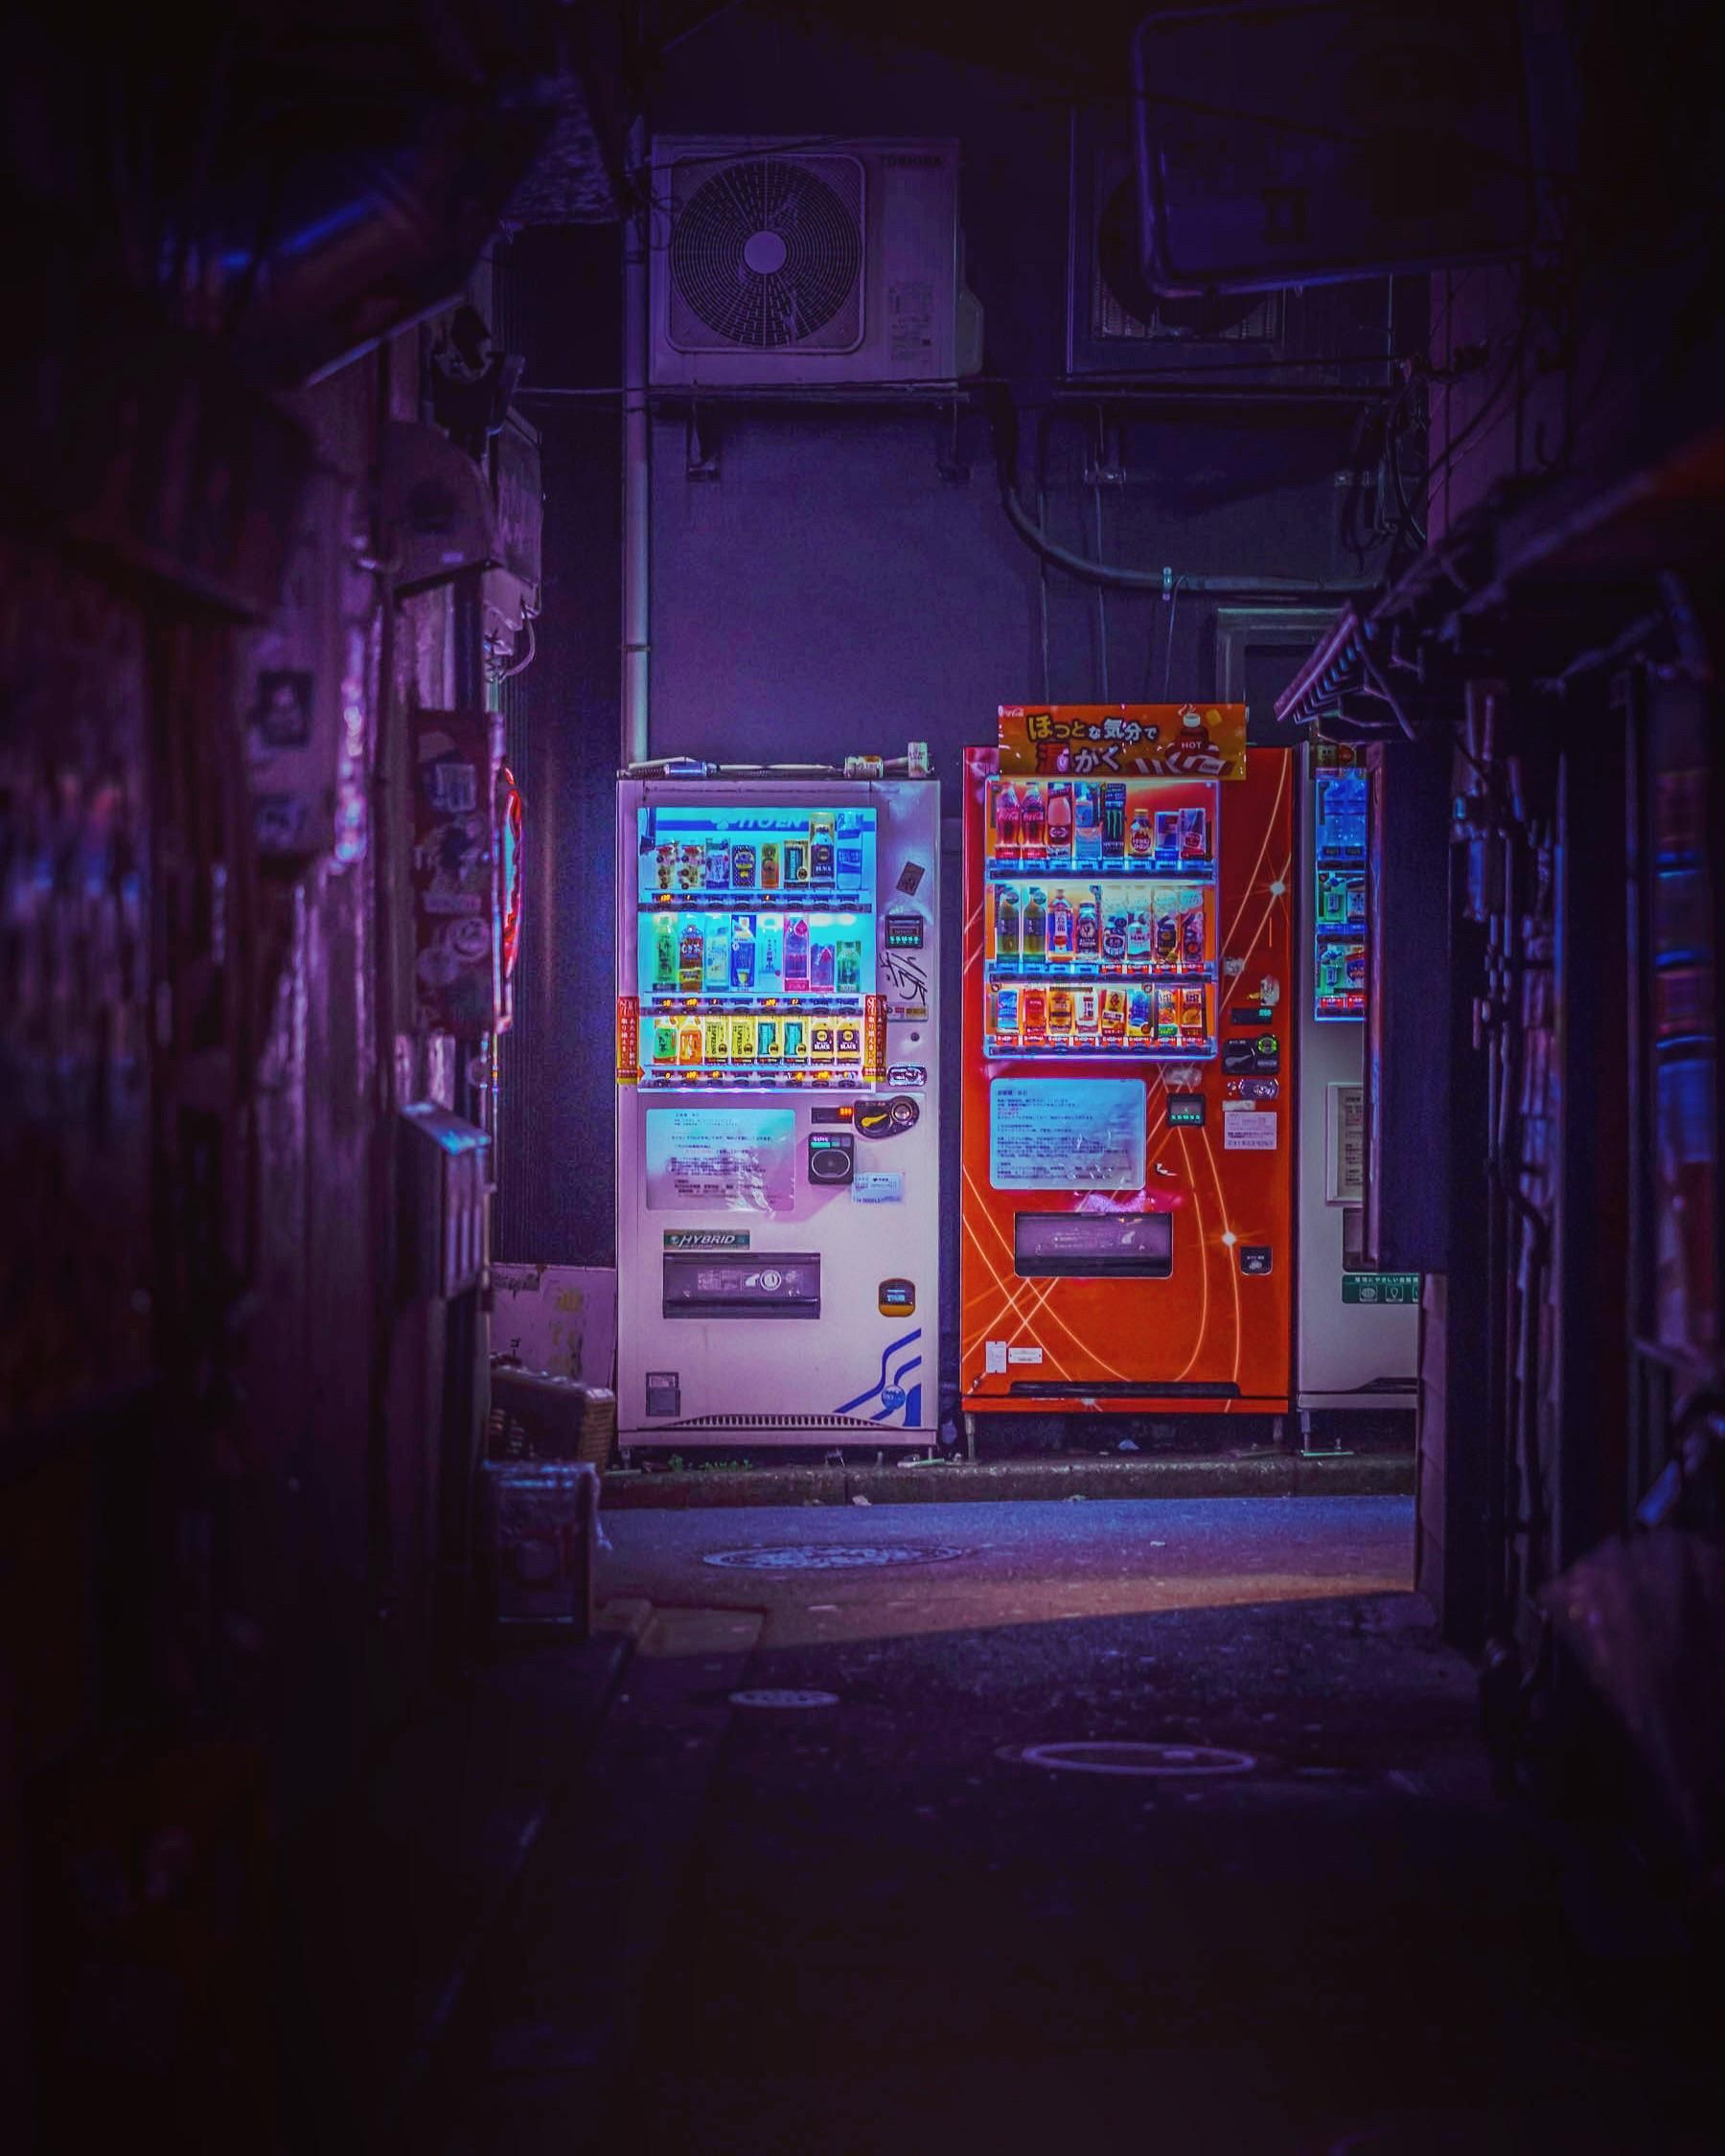 Japanese vending machines in a dark alleyway